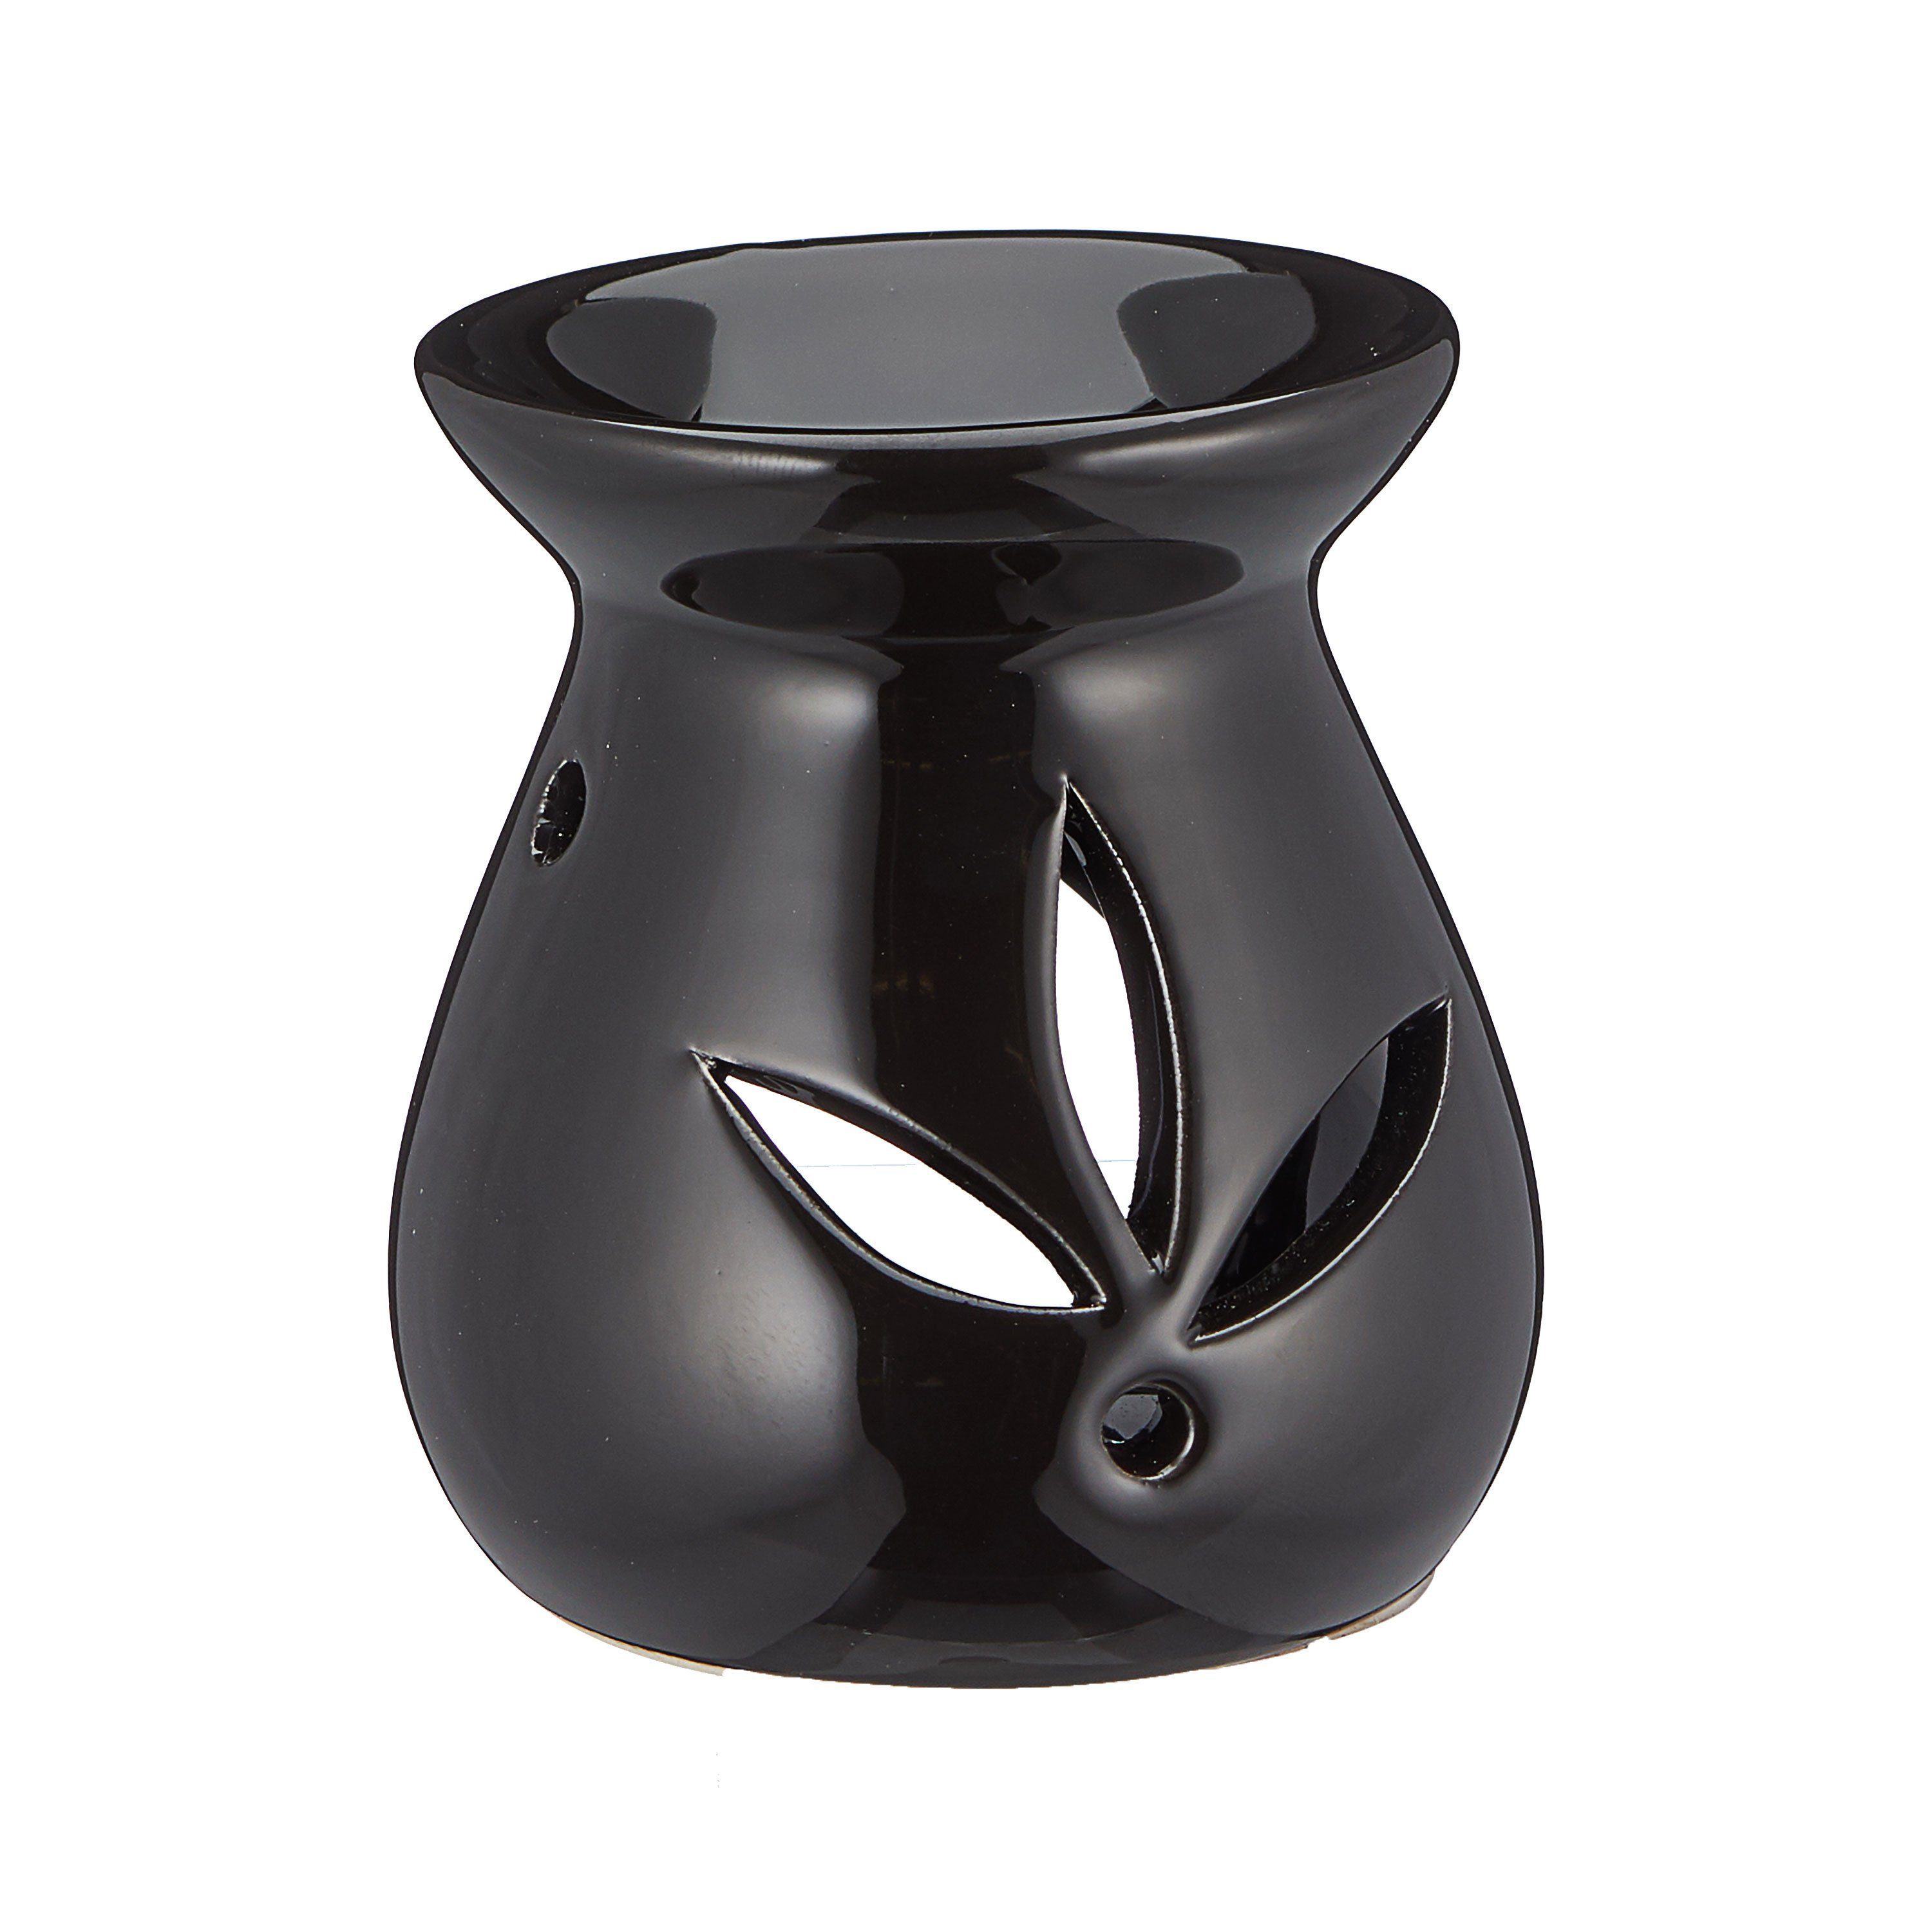 CEPEWA Duftlampe Duftlampe Aromalampe Keramik Set Raumduft braun schwarz 3er weiß